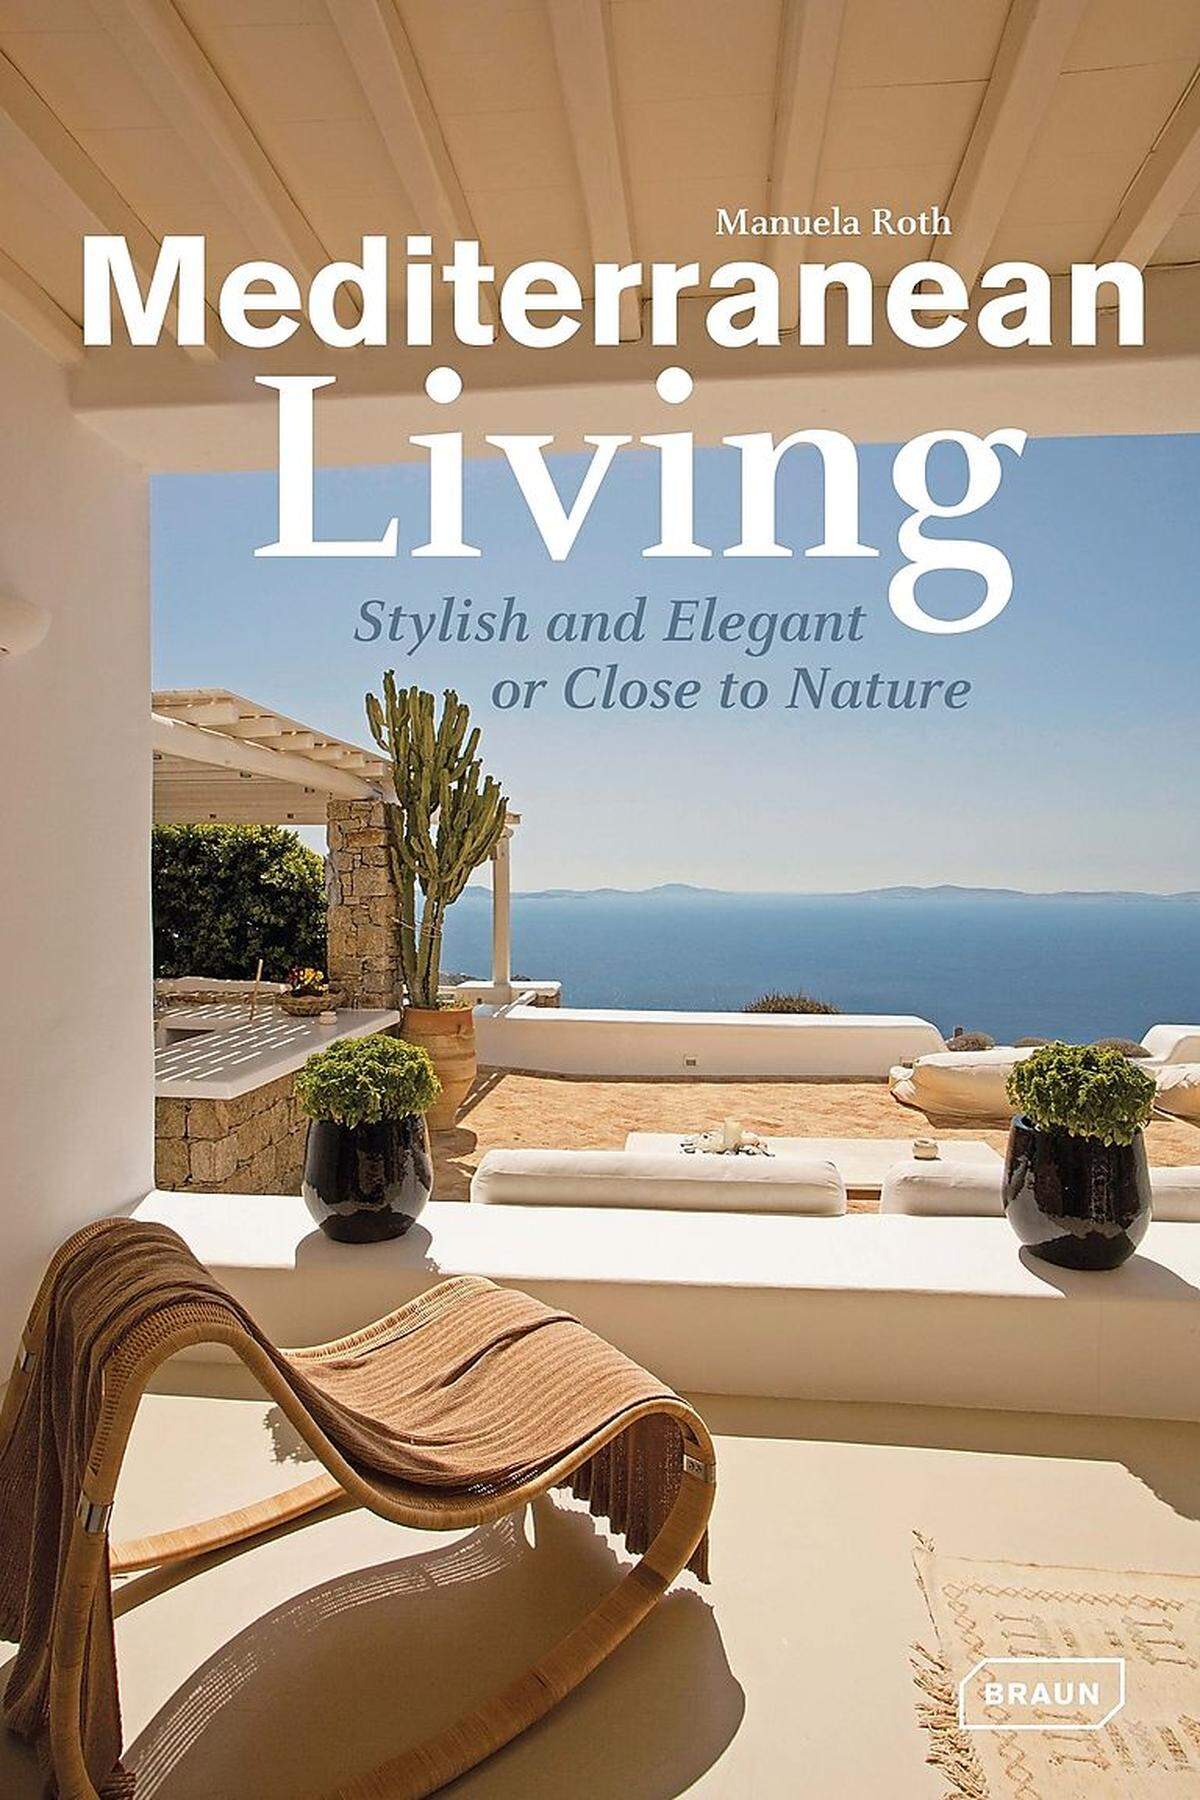 Der 216 Seiten dicke Bildband "Mediterranean Living" von Manuela Roth ist im Verlag Braun erschienen und im Buchhandel für 44 Euro erhältlich. Die Objektbeschreibungen sind in englischer Sprache verfasst.